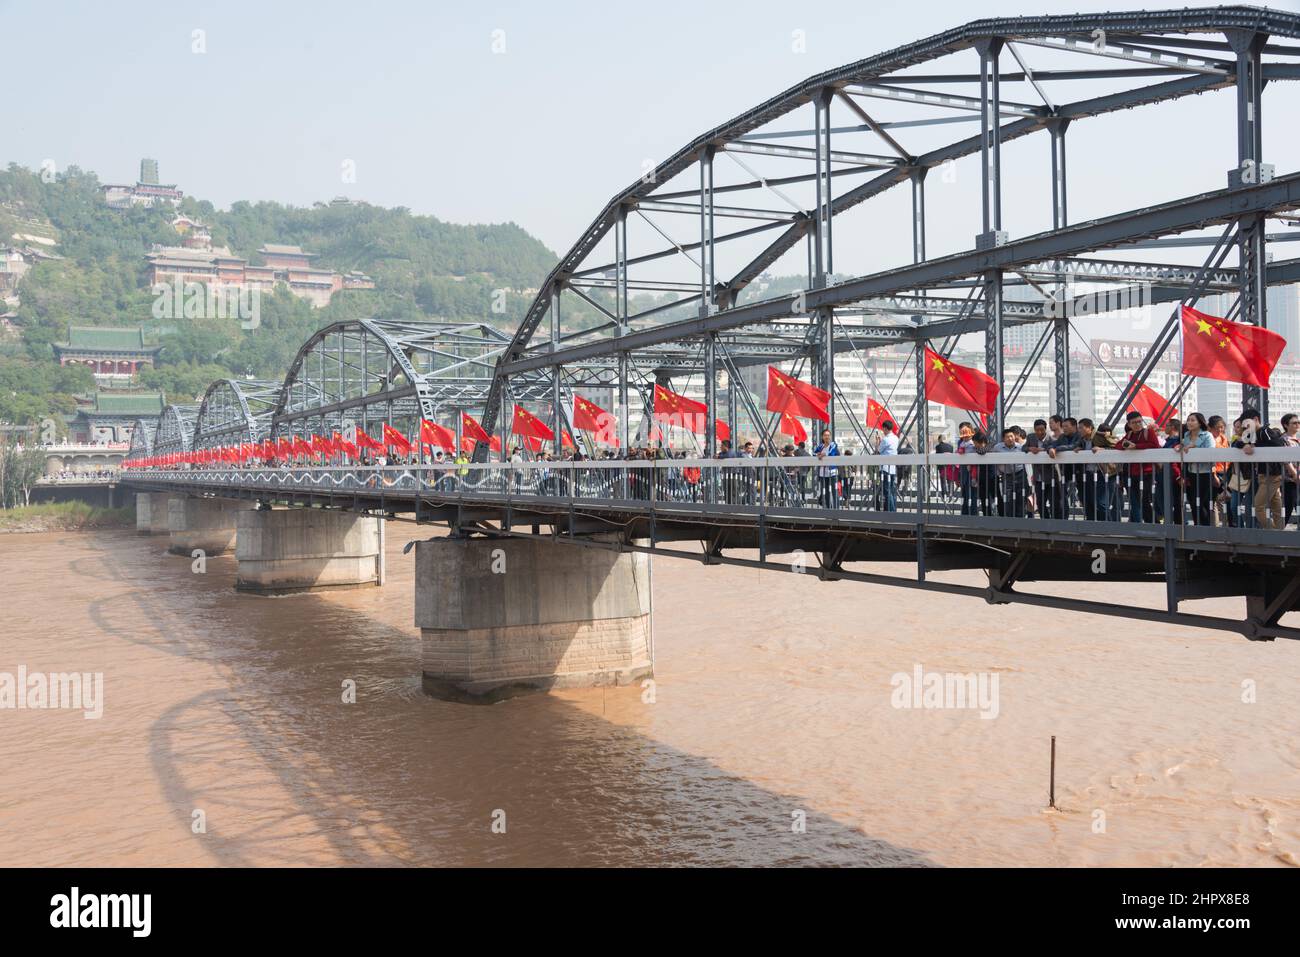 LANZHOU, CHINA - Sun Yat-Sen Bridge (Zhongshan Qiao). a famous First Bridge across the Yellow River in Lanzhou, Gansu, China. Stock Photo